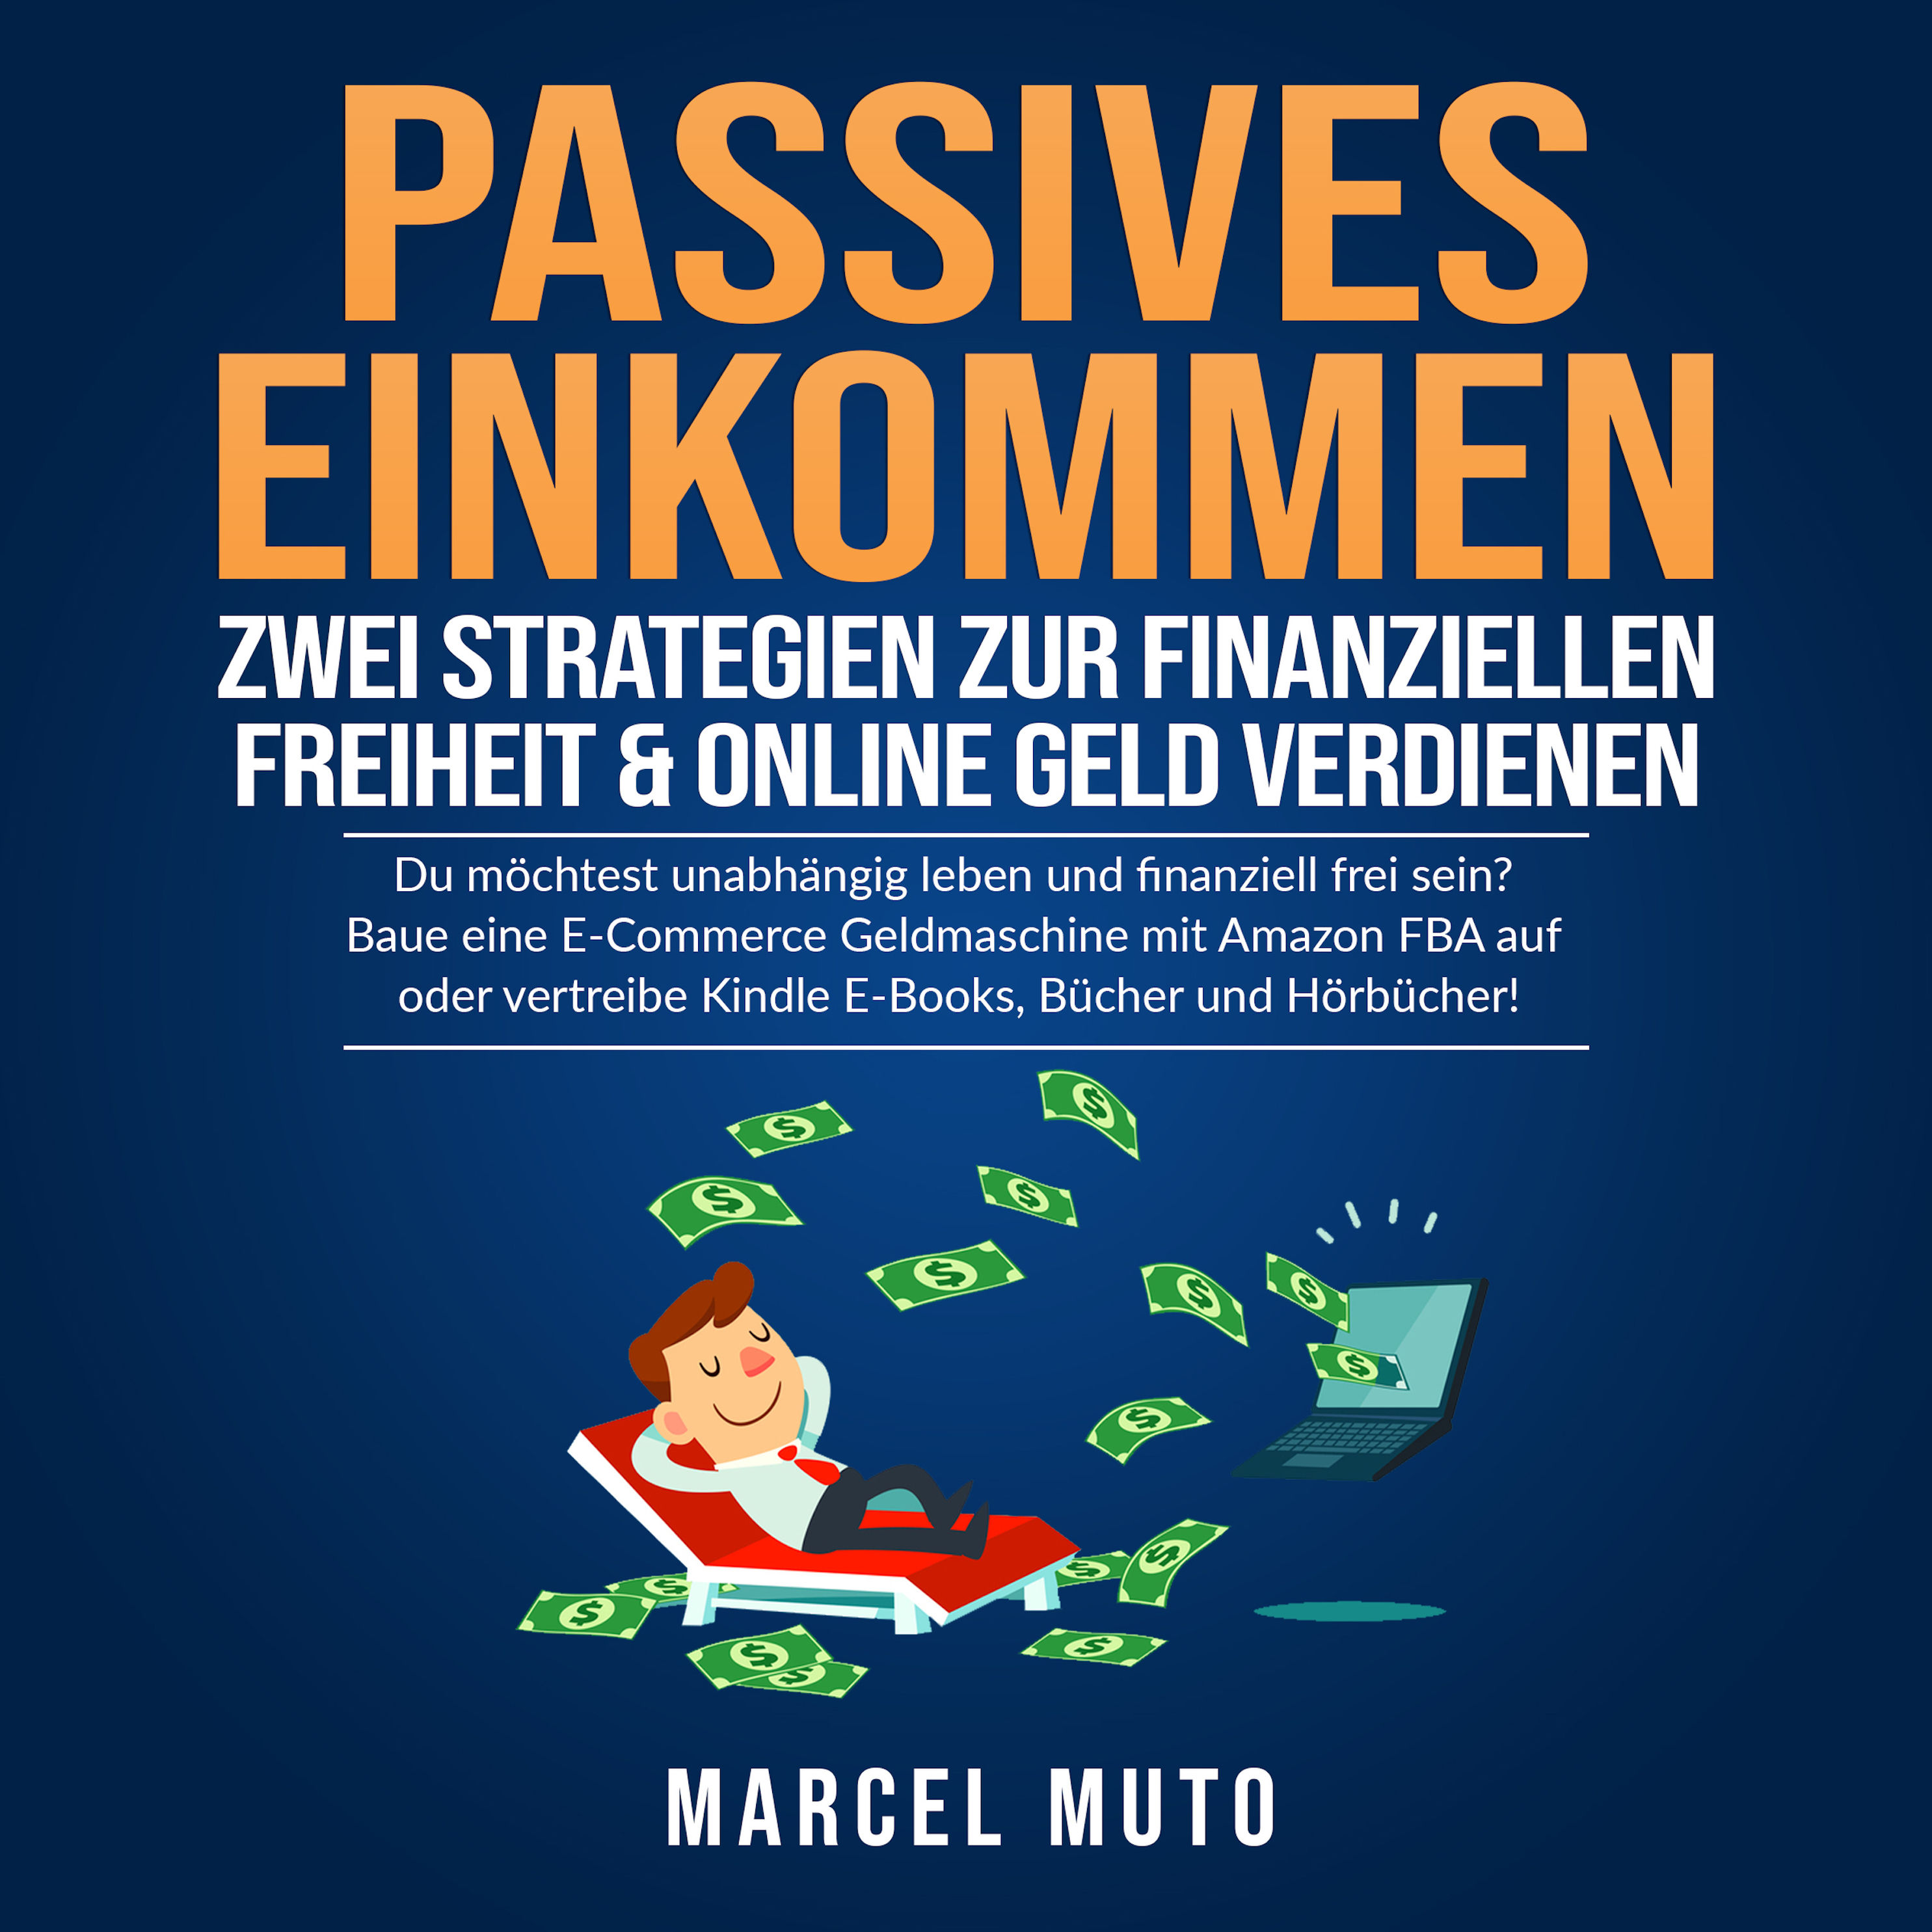 Passives Einkommen - Zwei Strategien zur Finanziellen Freiheit & Online  Geld verdienen Hörbuch Download